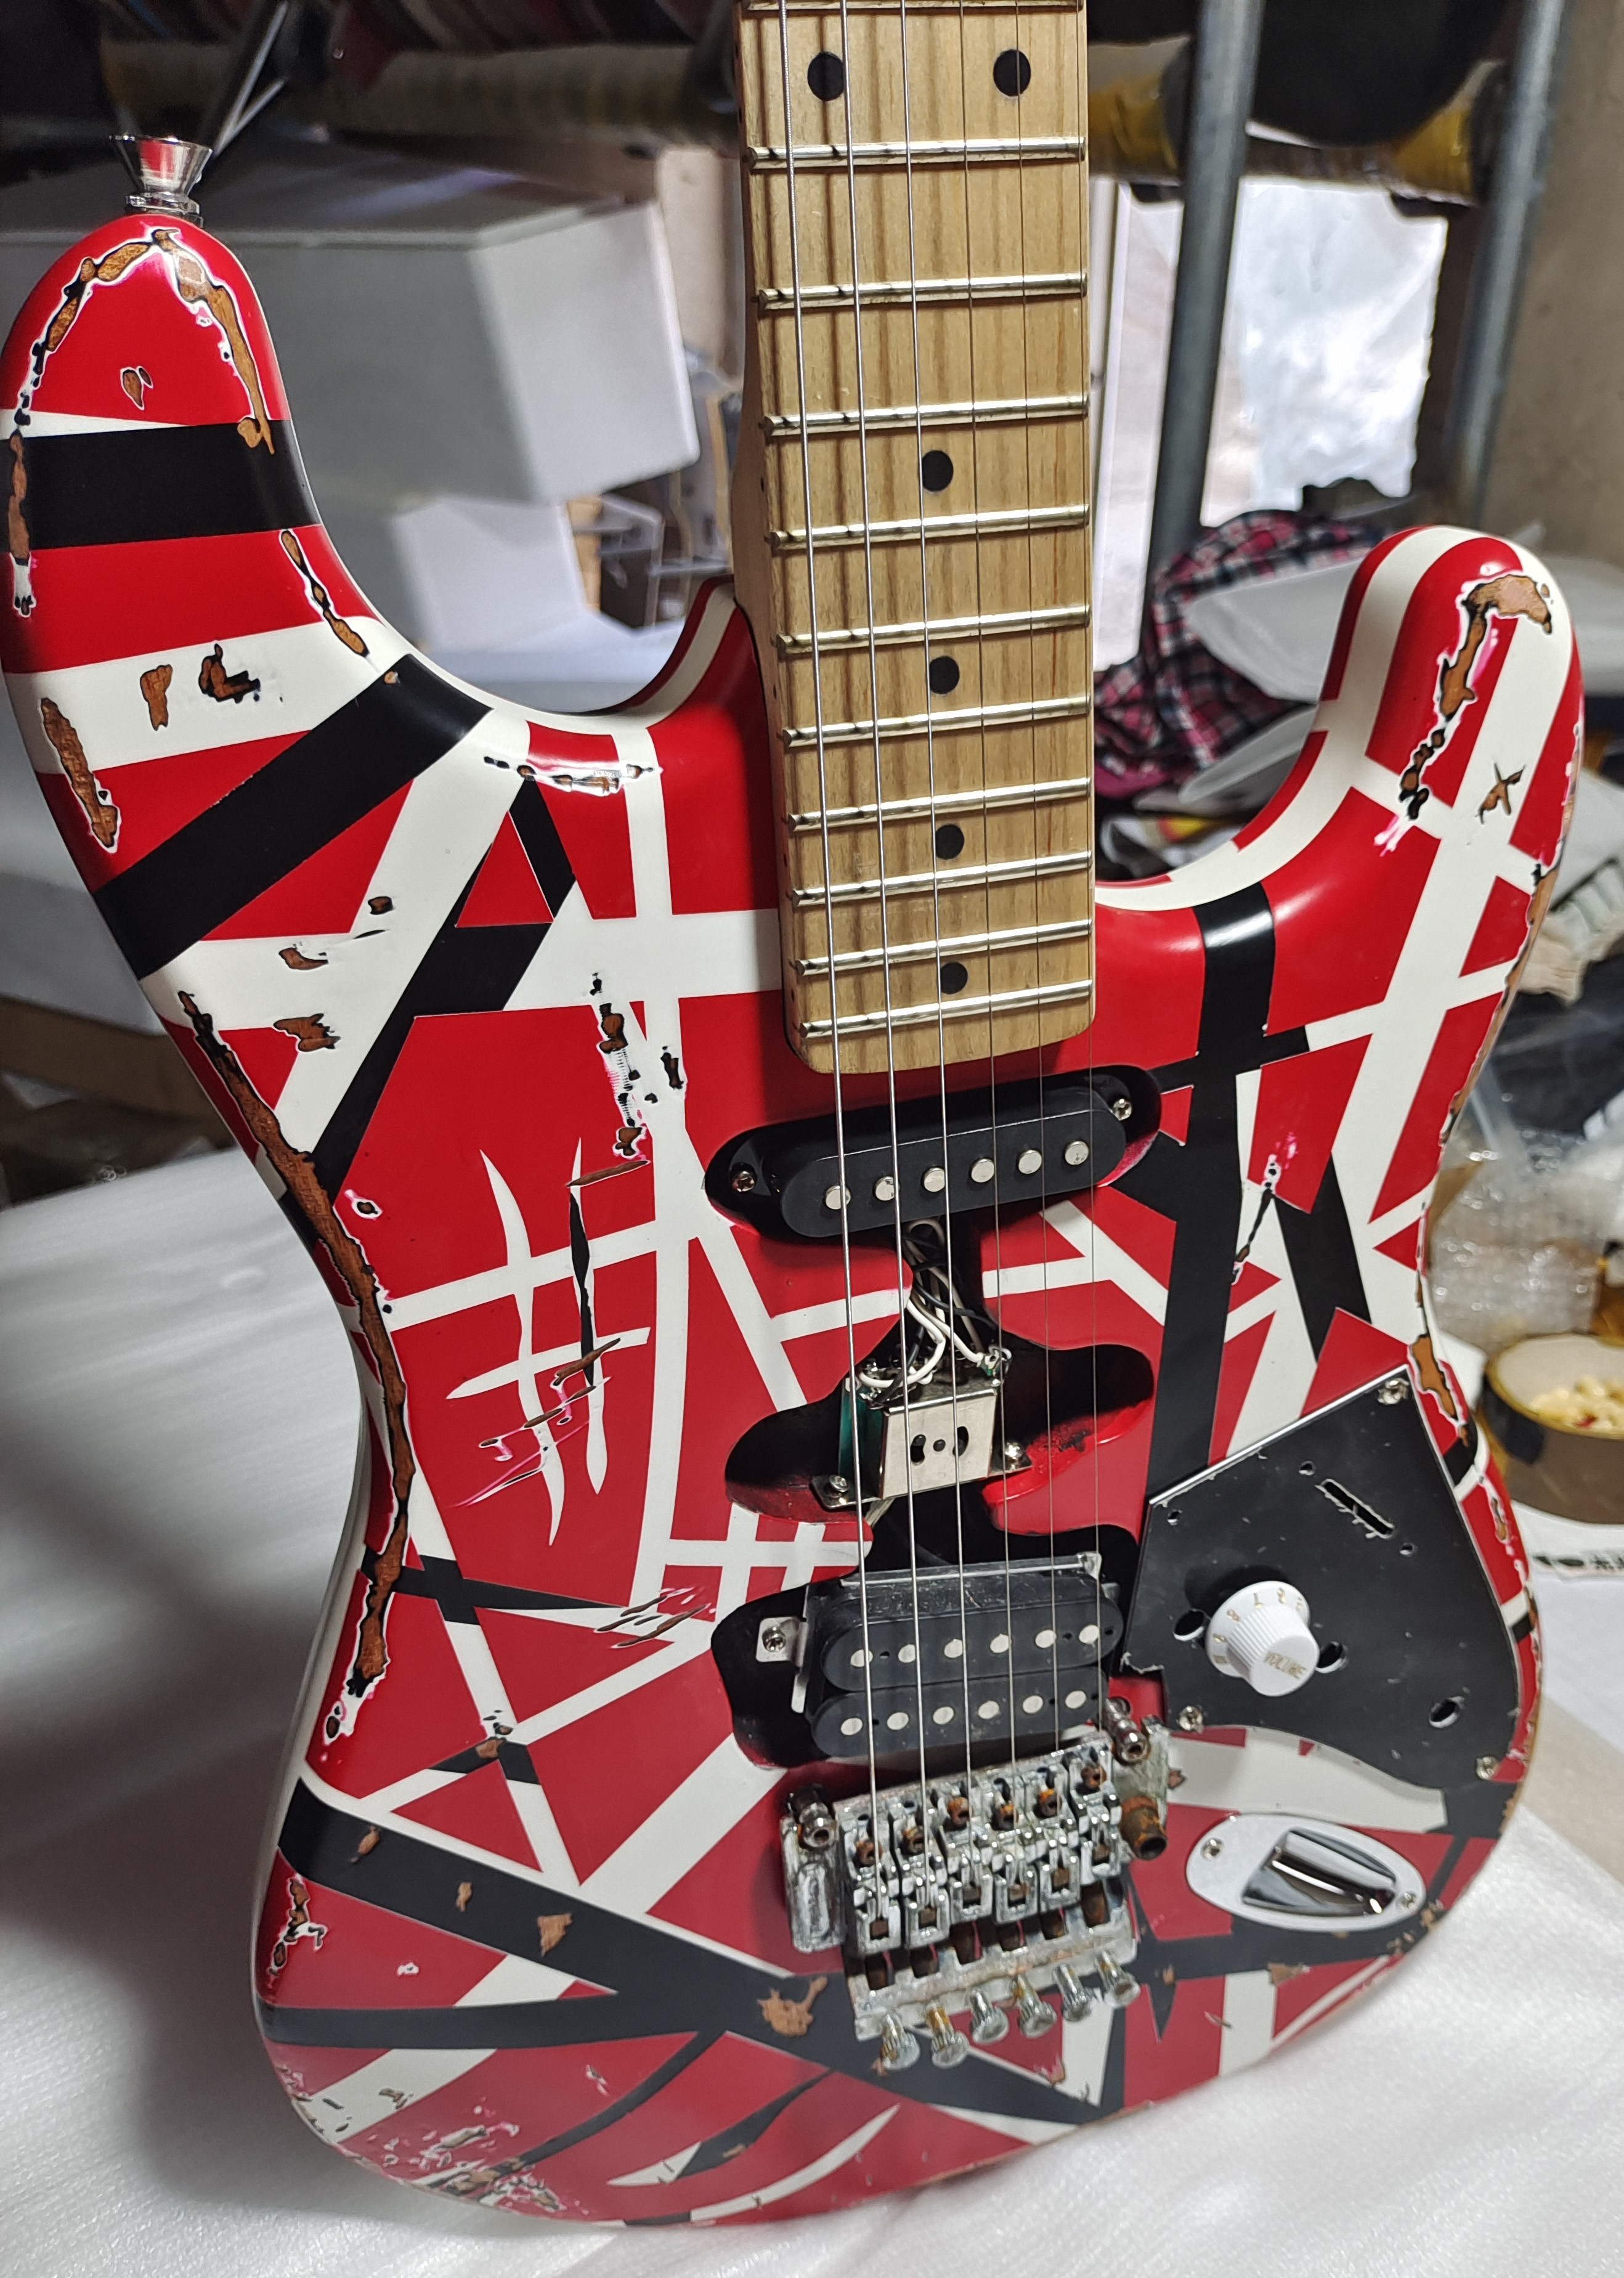 5150ファン・ヘイルン遺物のアクセサリーが作ったエレキギターハンドアルダーボディカナダメープルネックパッケージメール